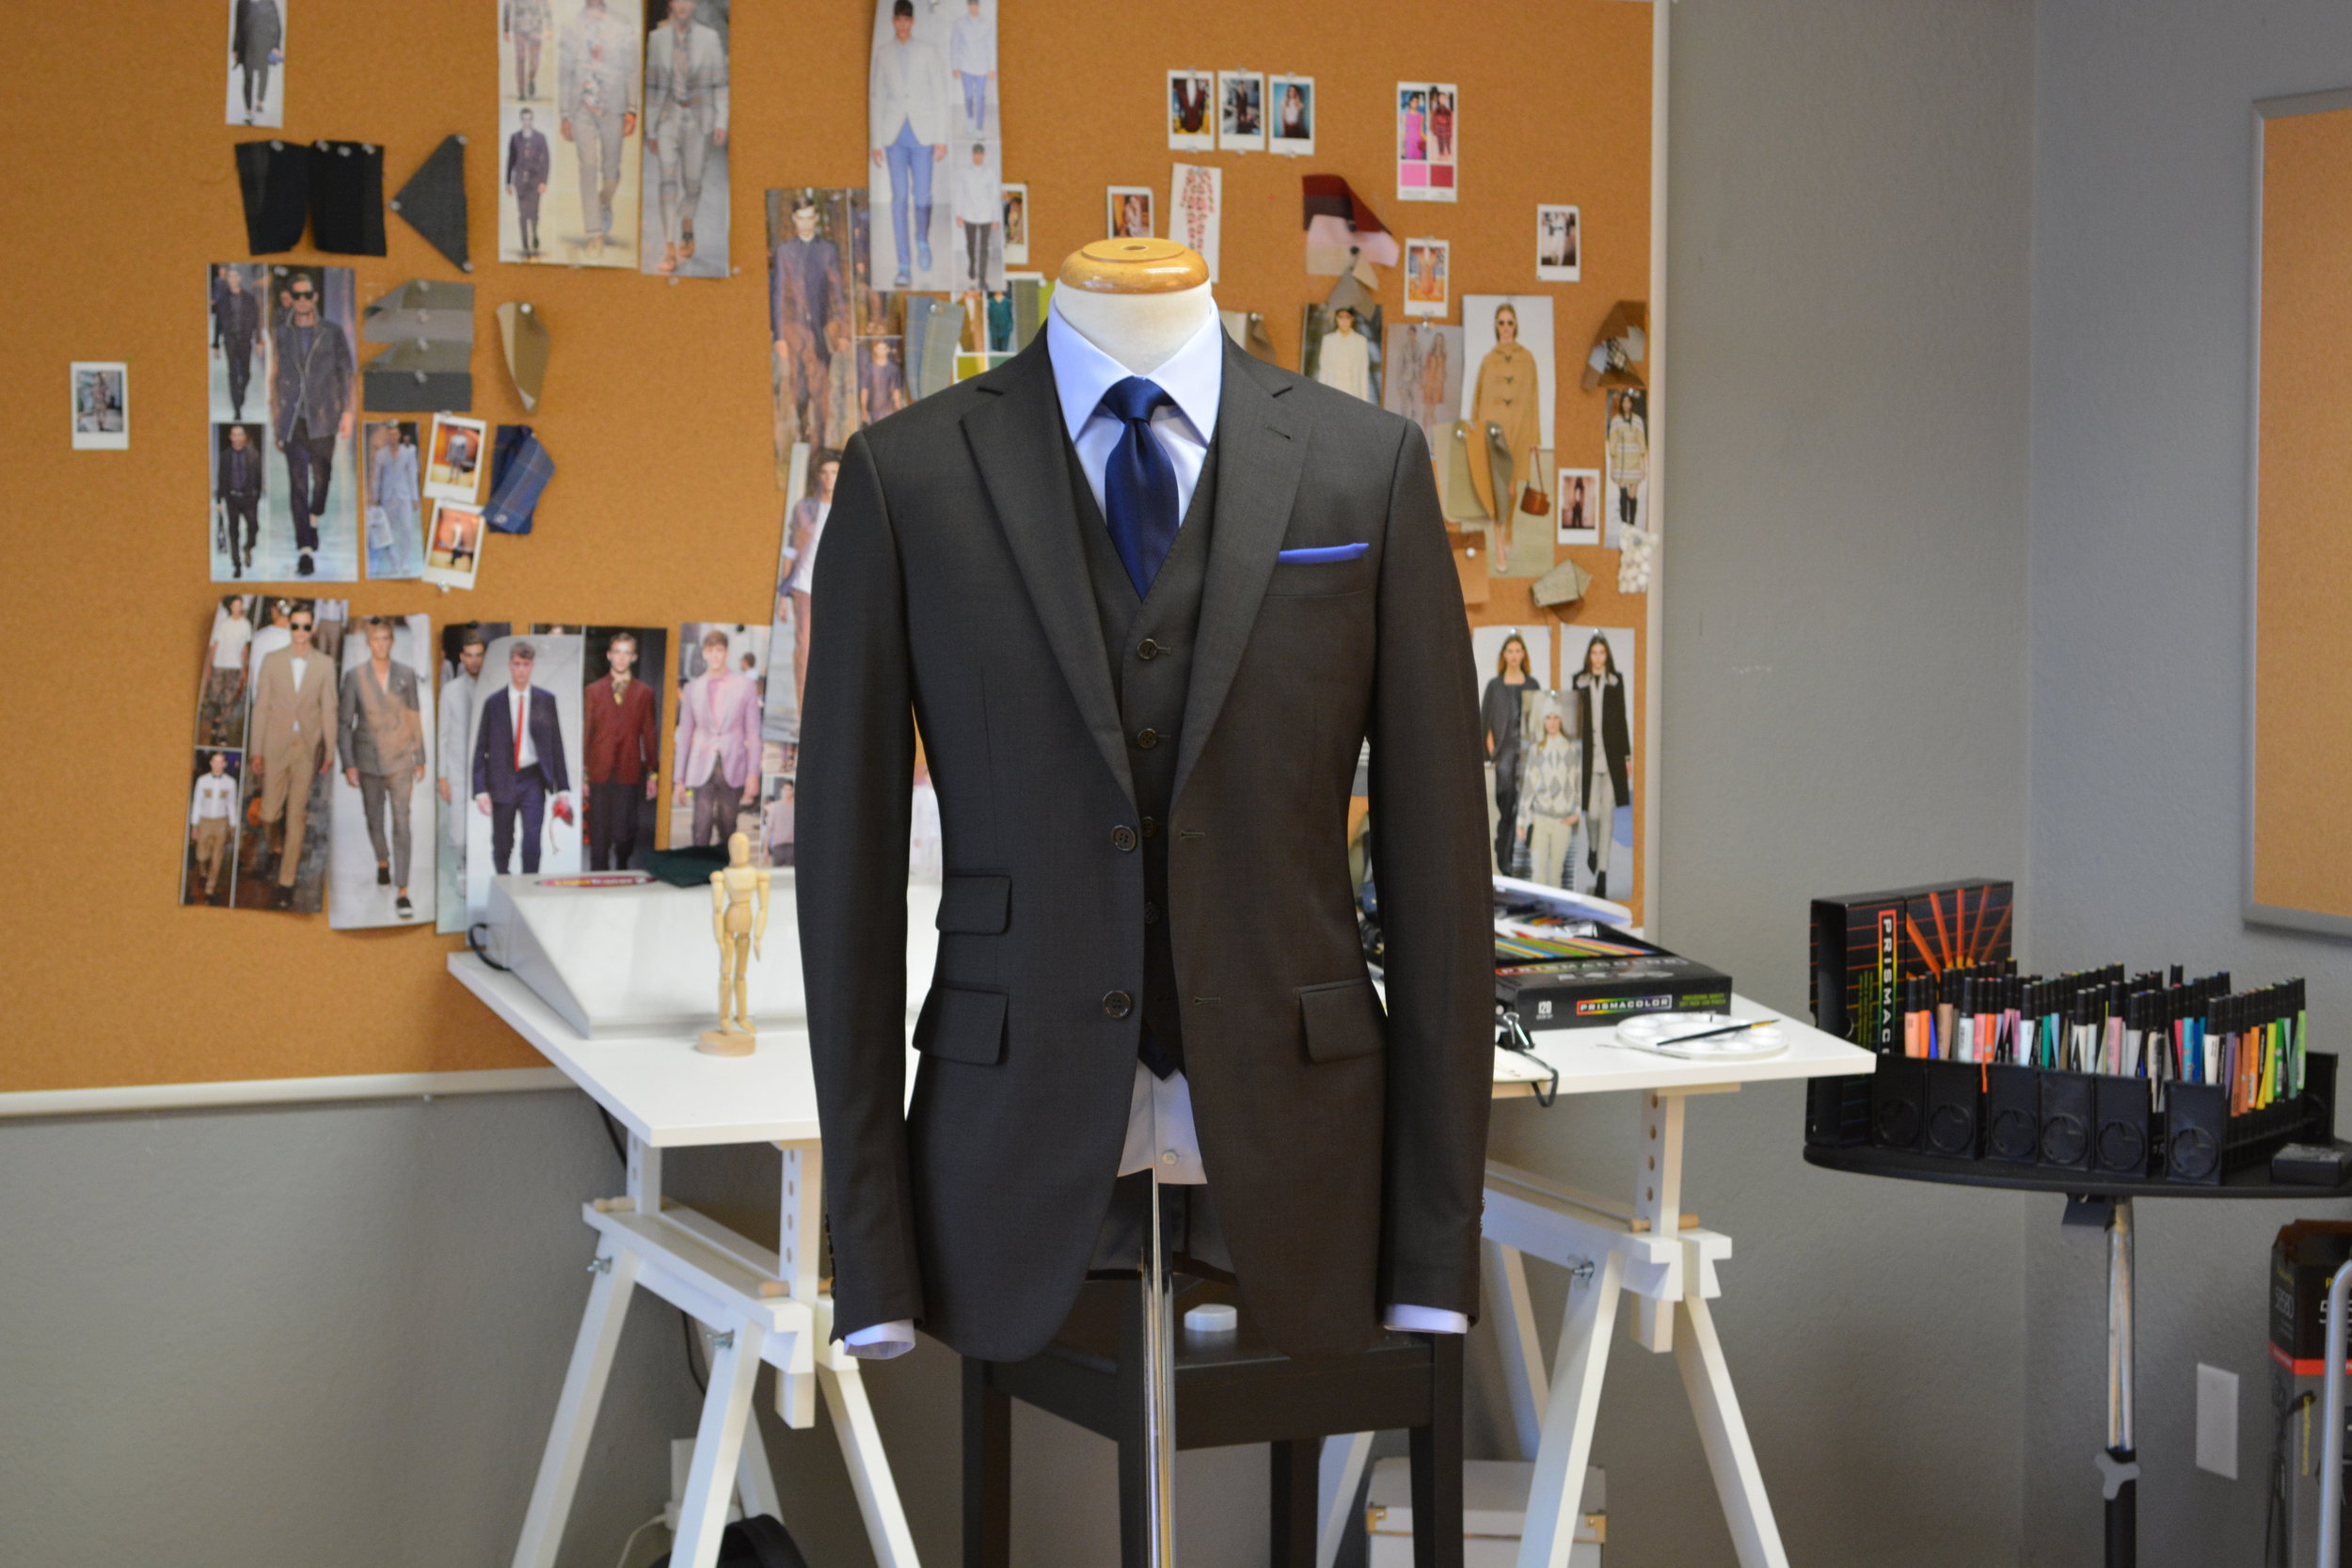 Suit Tailor